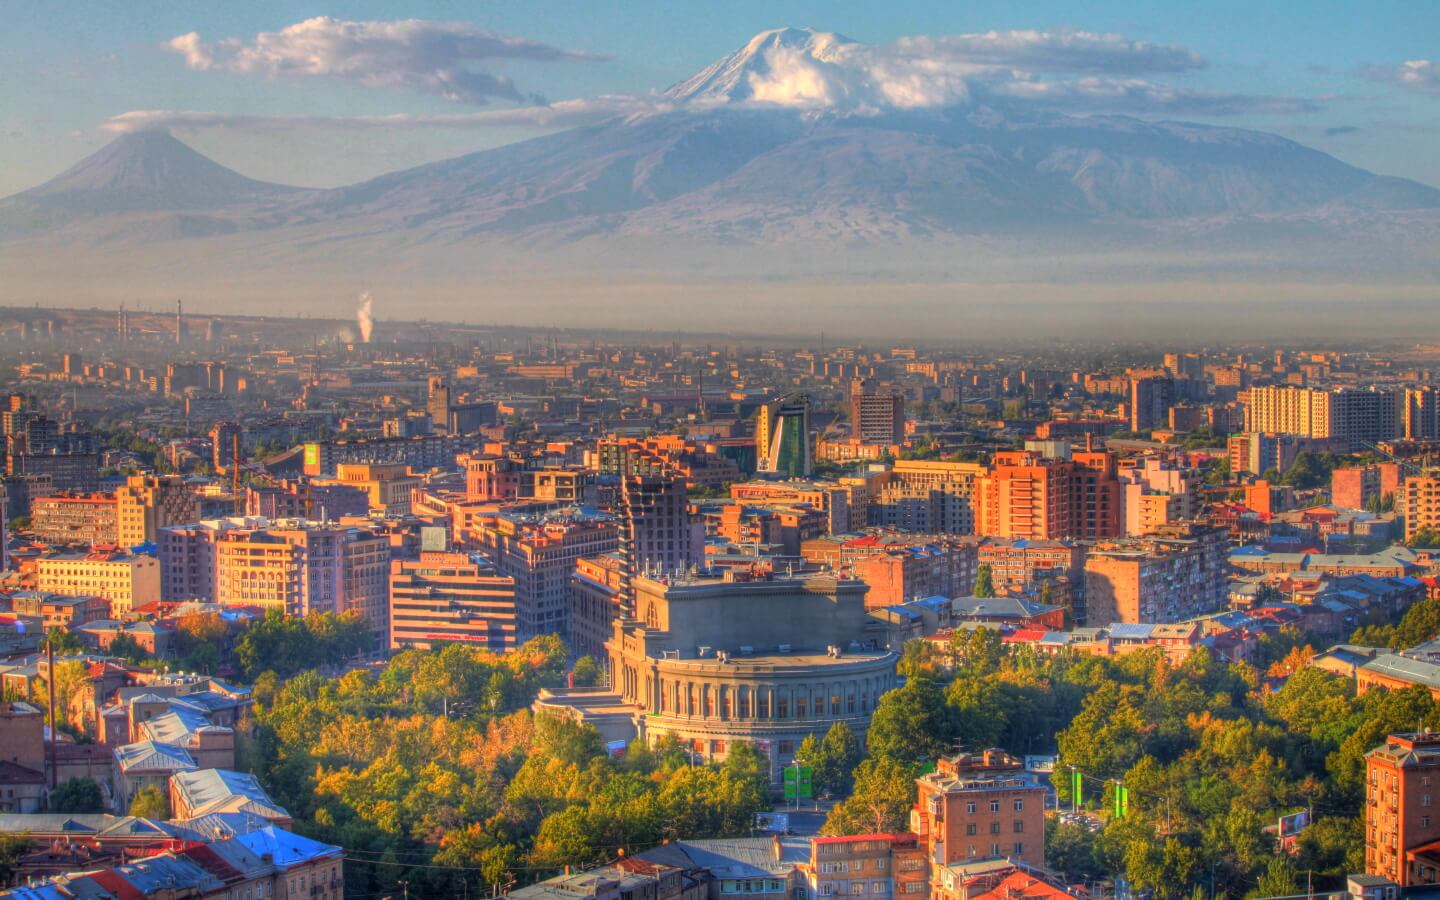 Сентябрь в Армении будет довольно теплым - главный синоптик